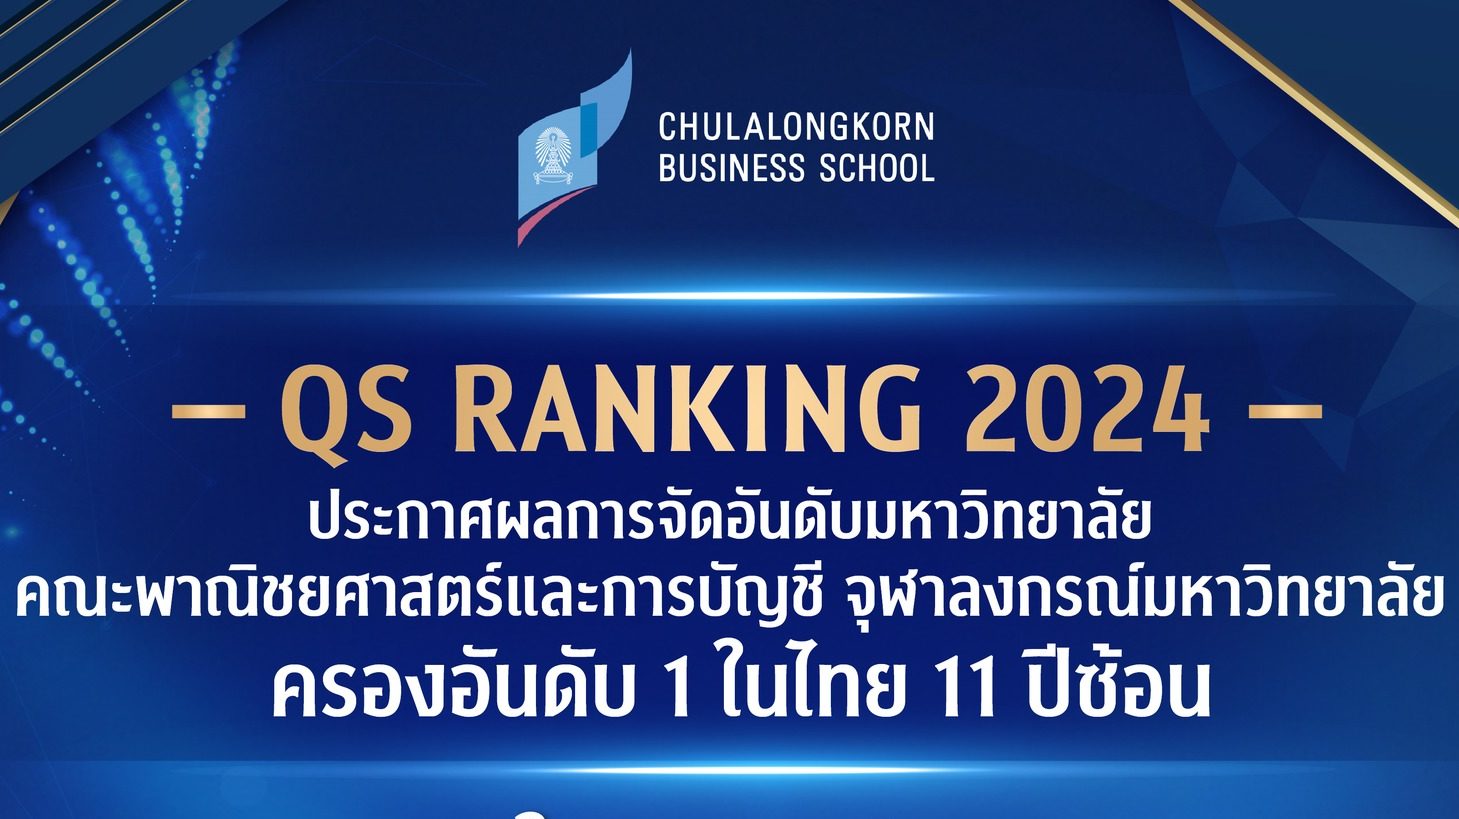 คณะพาณิชยศาสตร์และการบัญชี จุฬาลงกรณ์มหาวิทยาลัย ครองอันดับ 1 ในประเทศไทยอีกครั้ง จากผลการจัดอันดับมหาวิทยาลัยชั้นนำของโลก QS World University Rankings by Subject 2024